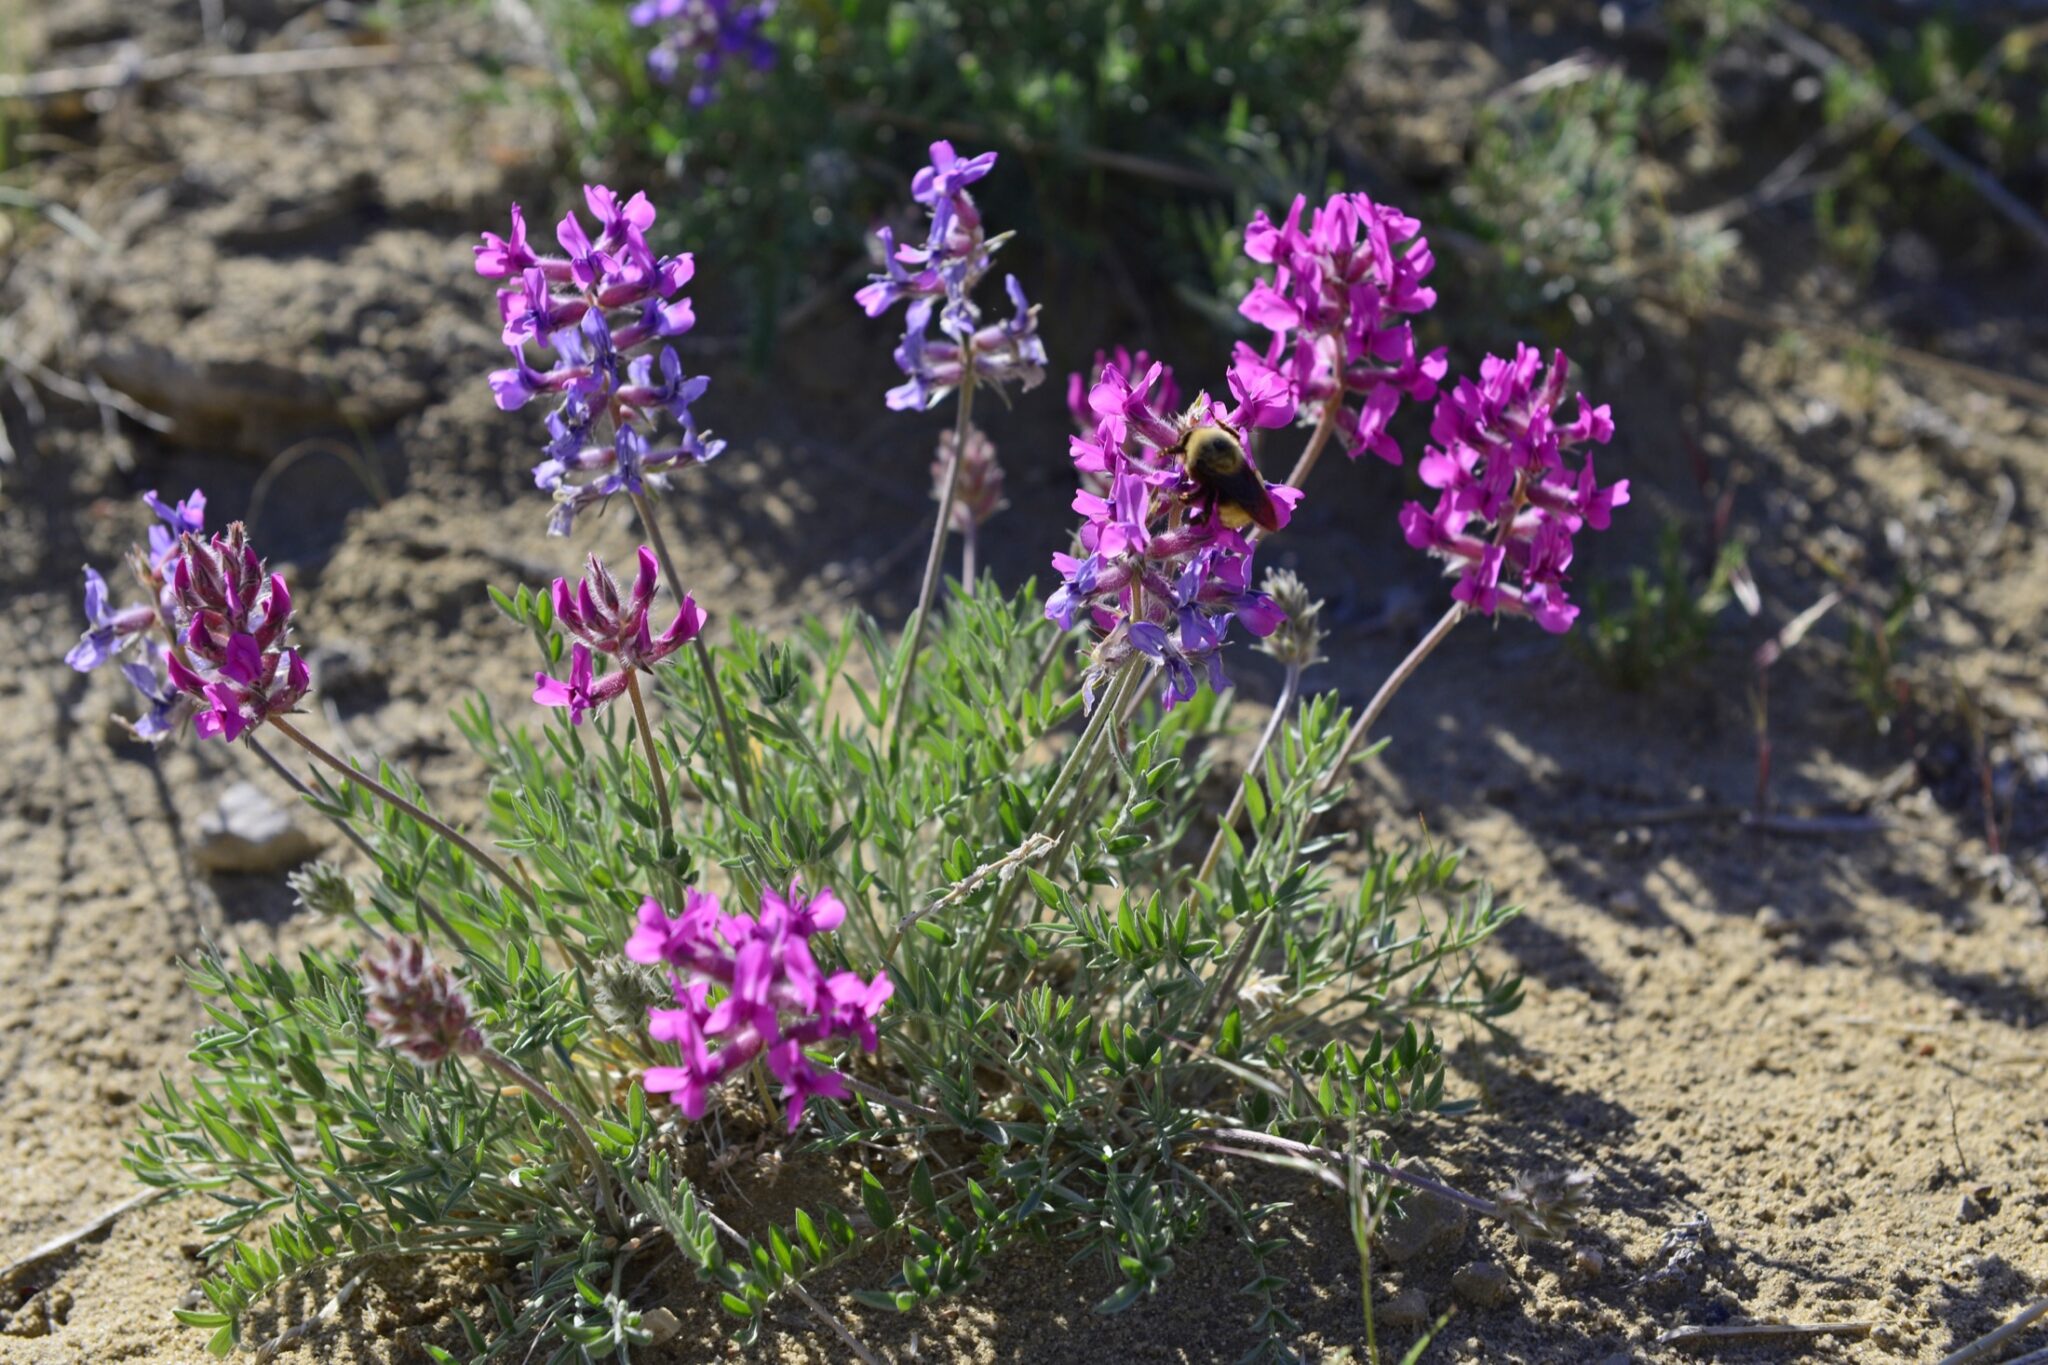 Purple flowers growing in sandy soil